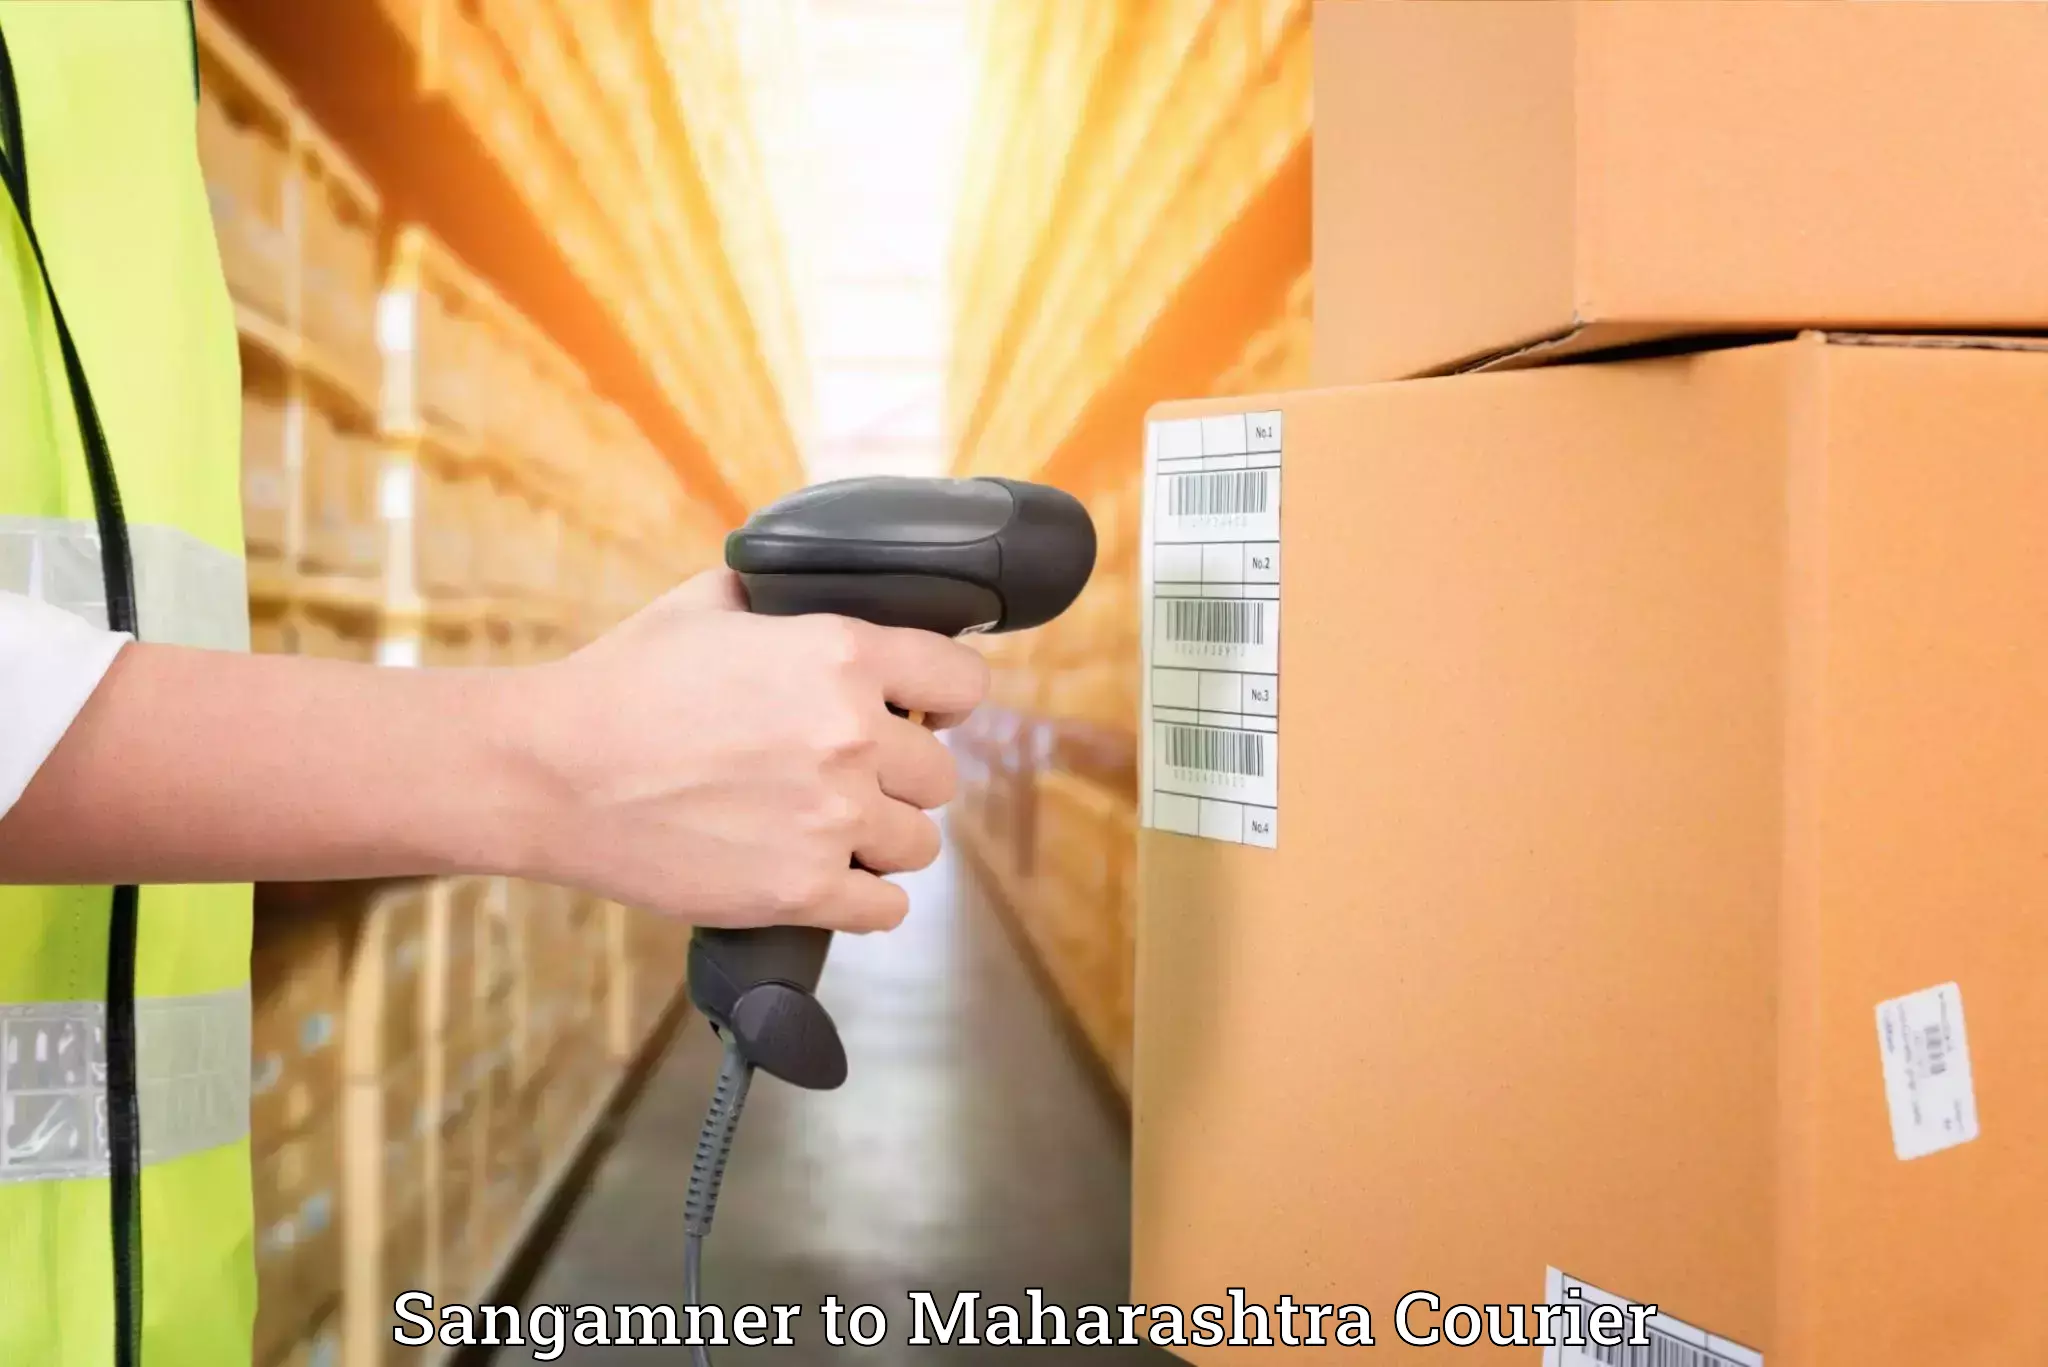 Household transport experts Sangamner to Maharashtra